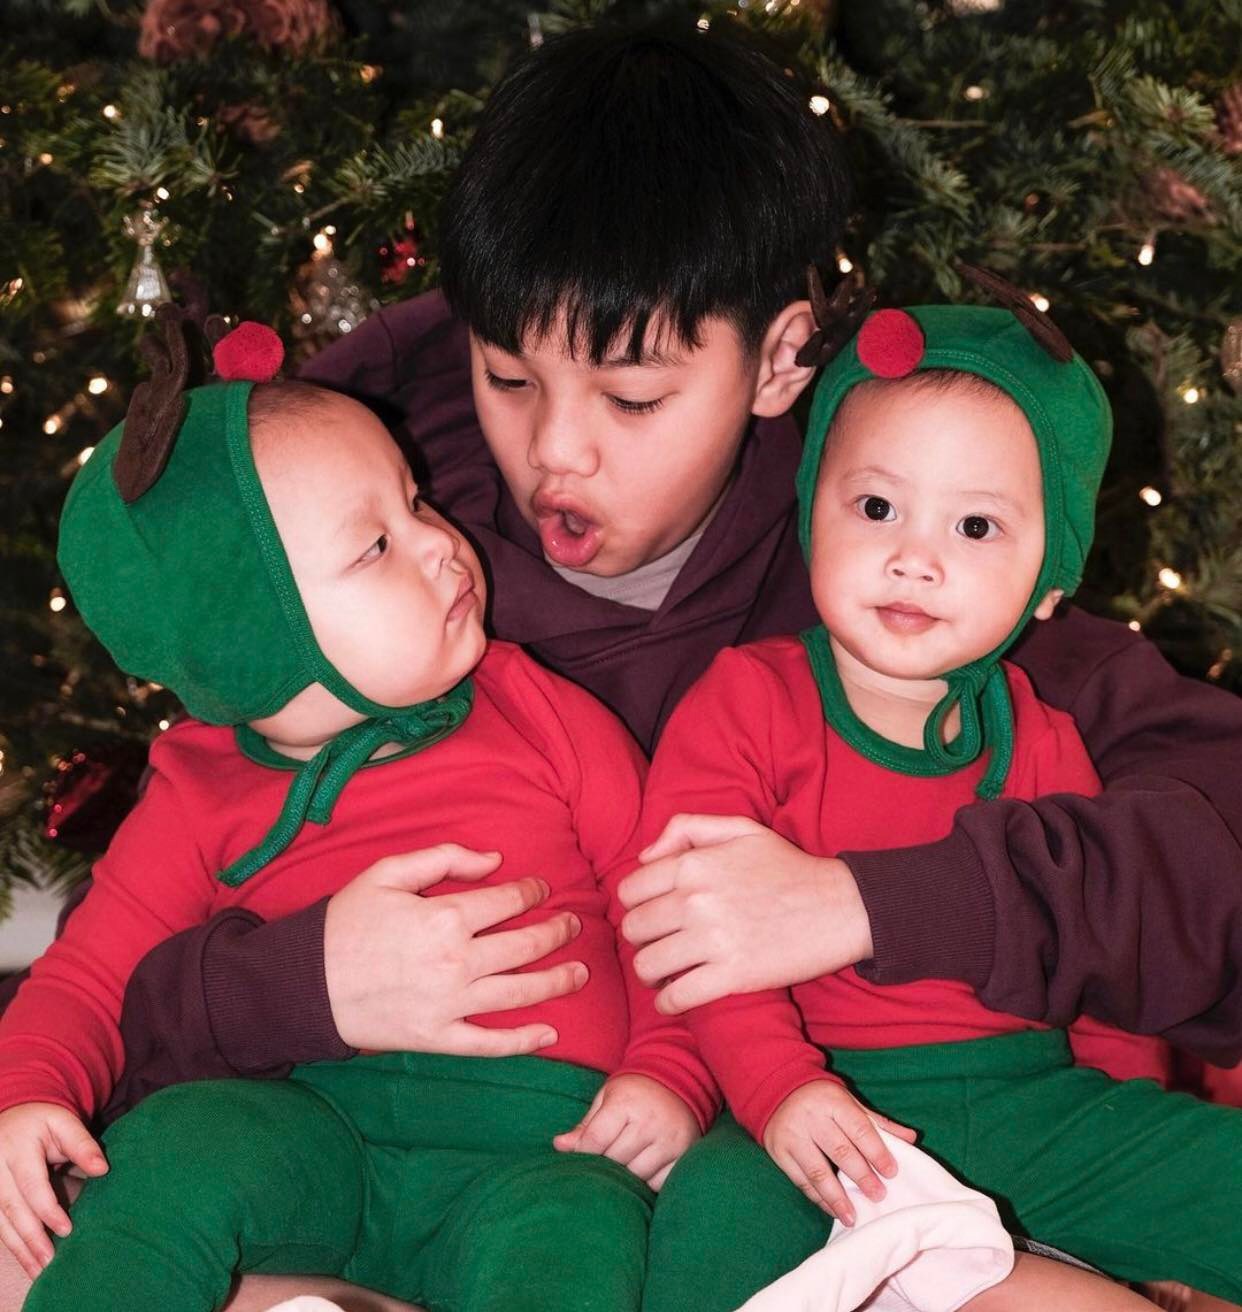 Anh trai Subeo nghịch ngợm bên hai em song sinh trong bộ ảnh Noel